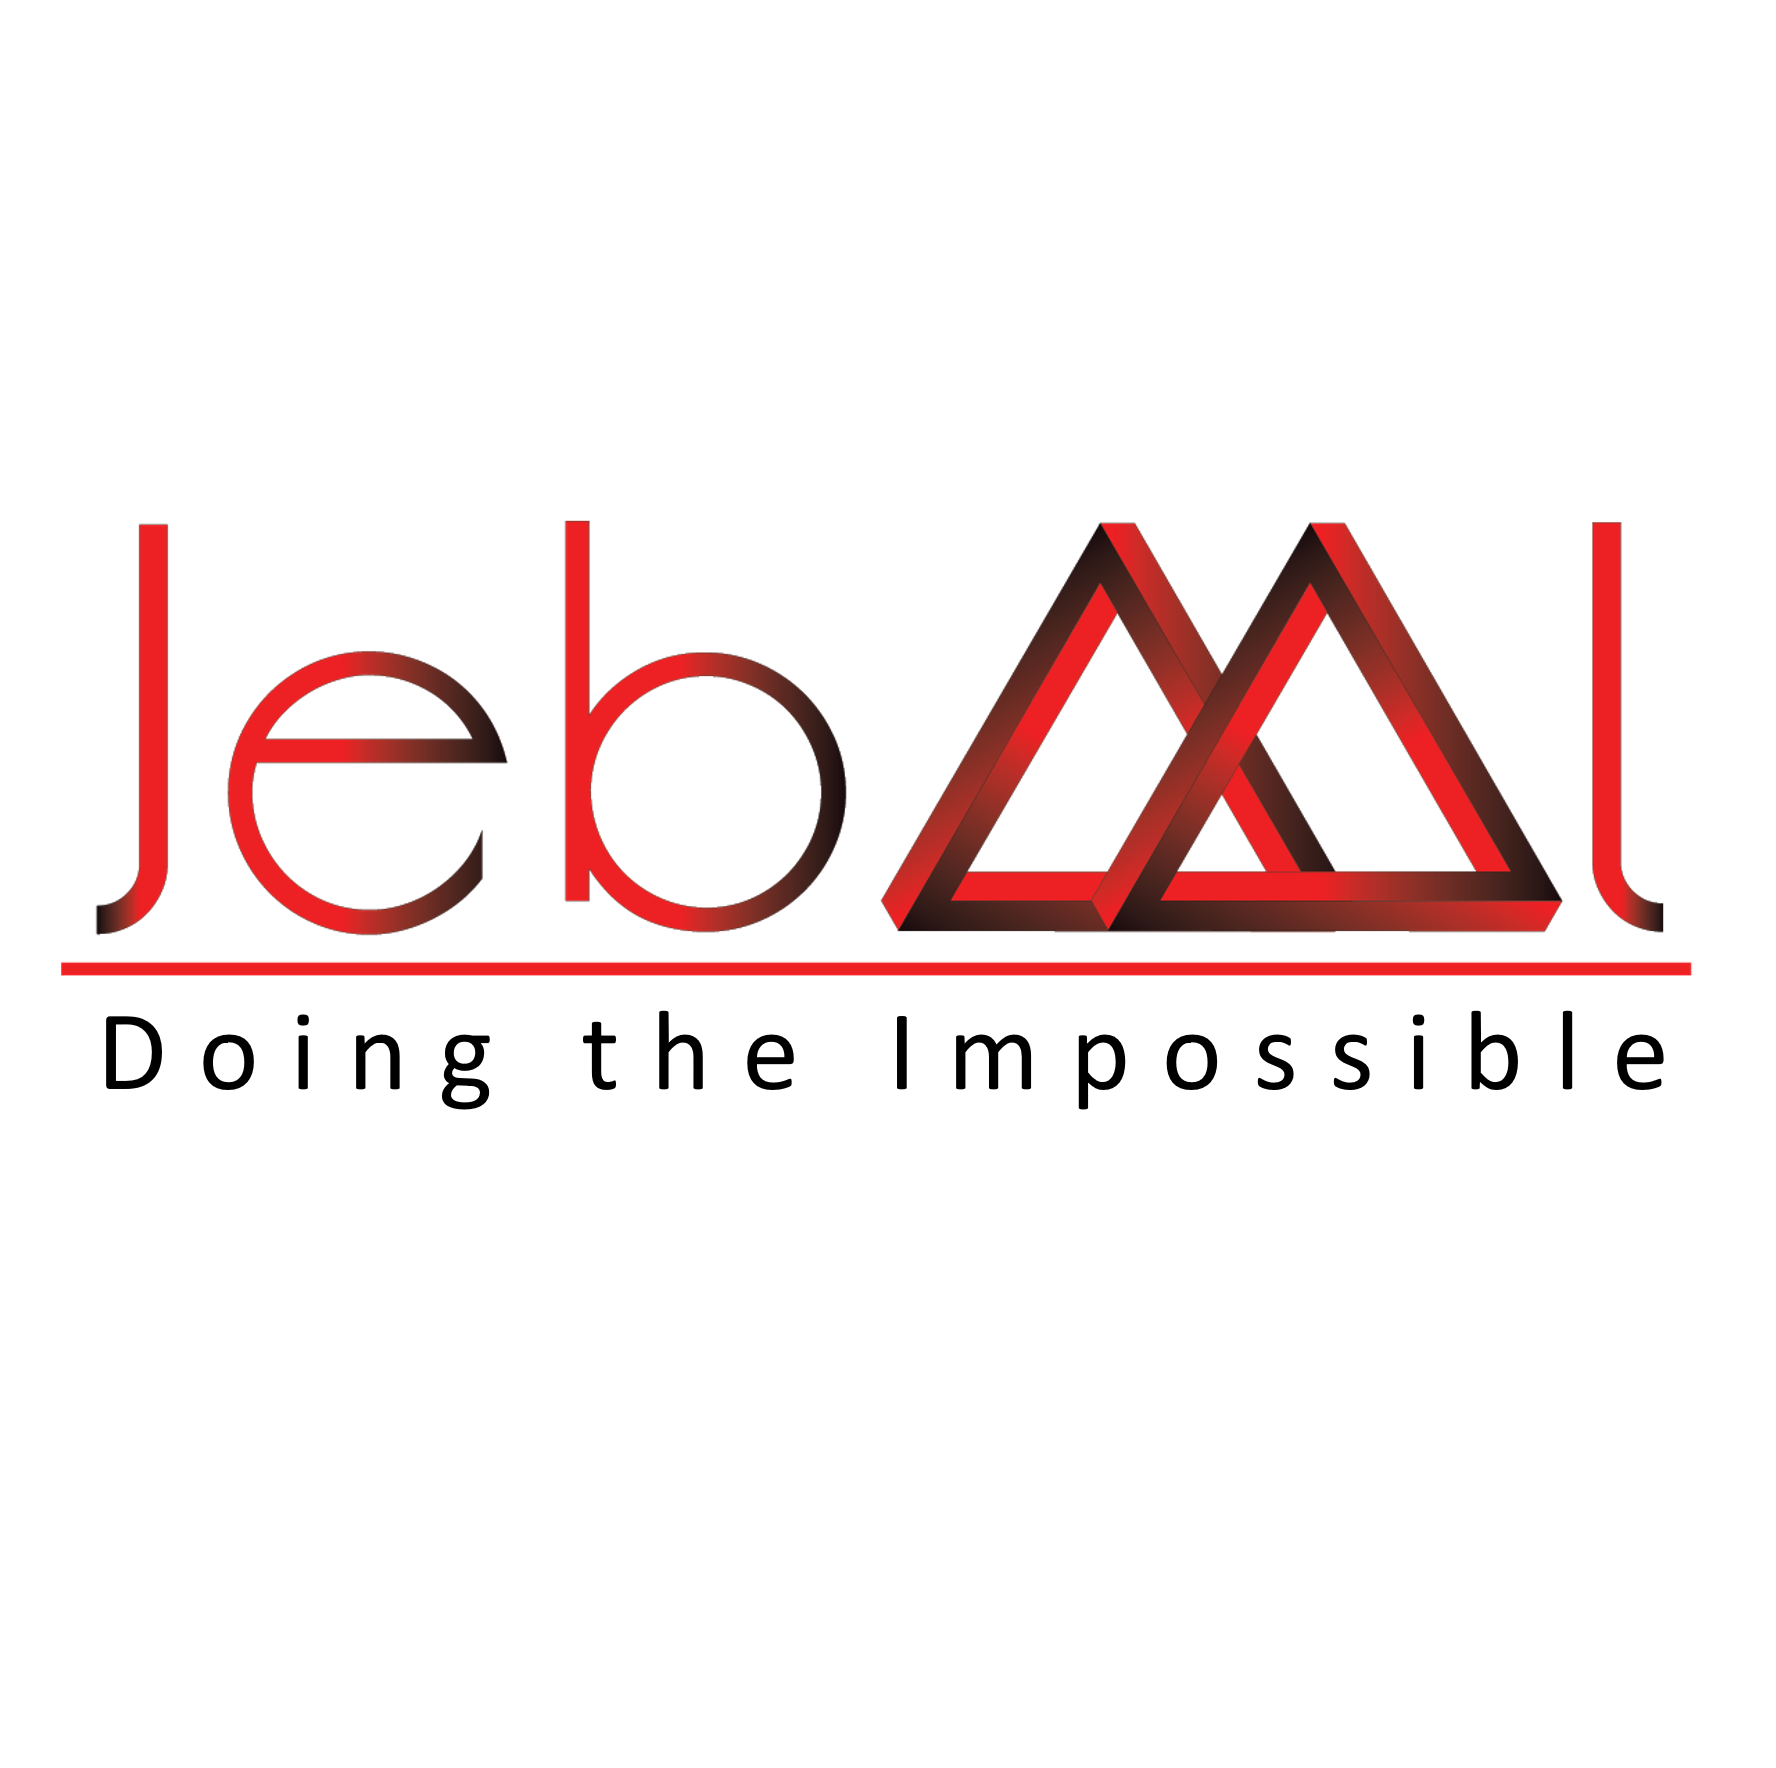 Jebaal Corporation Company